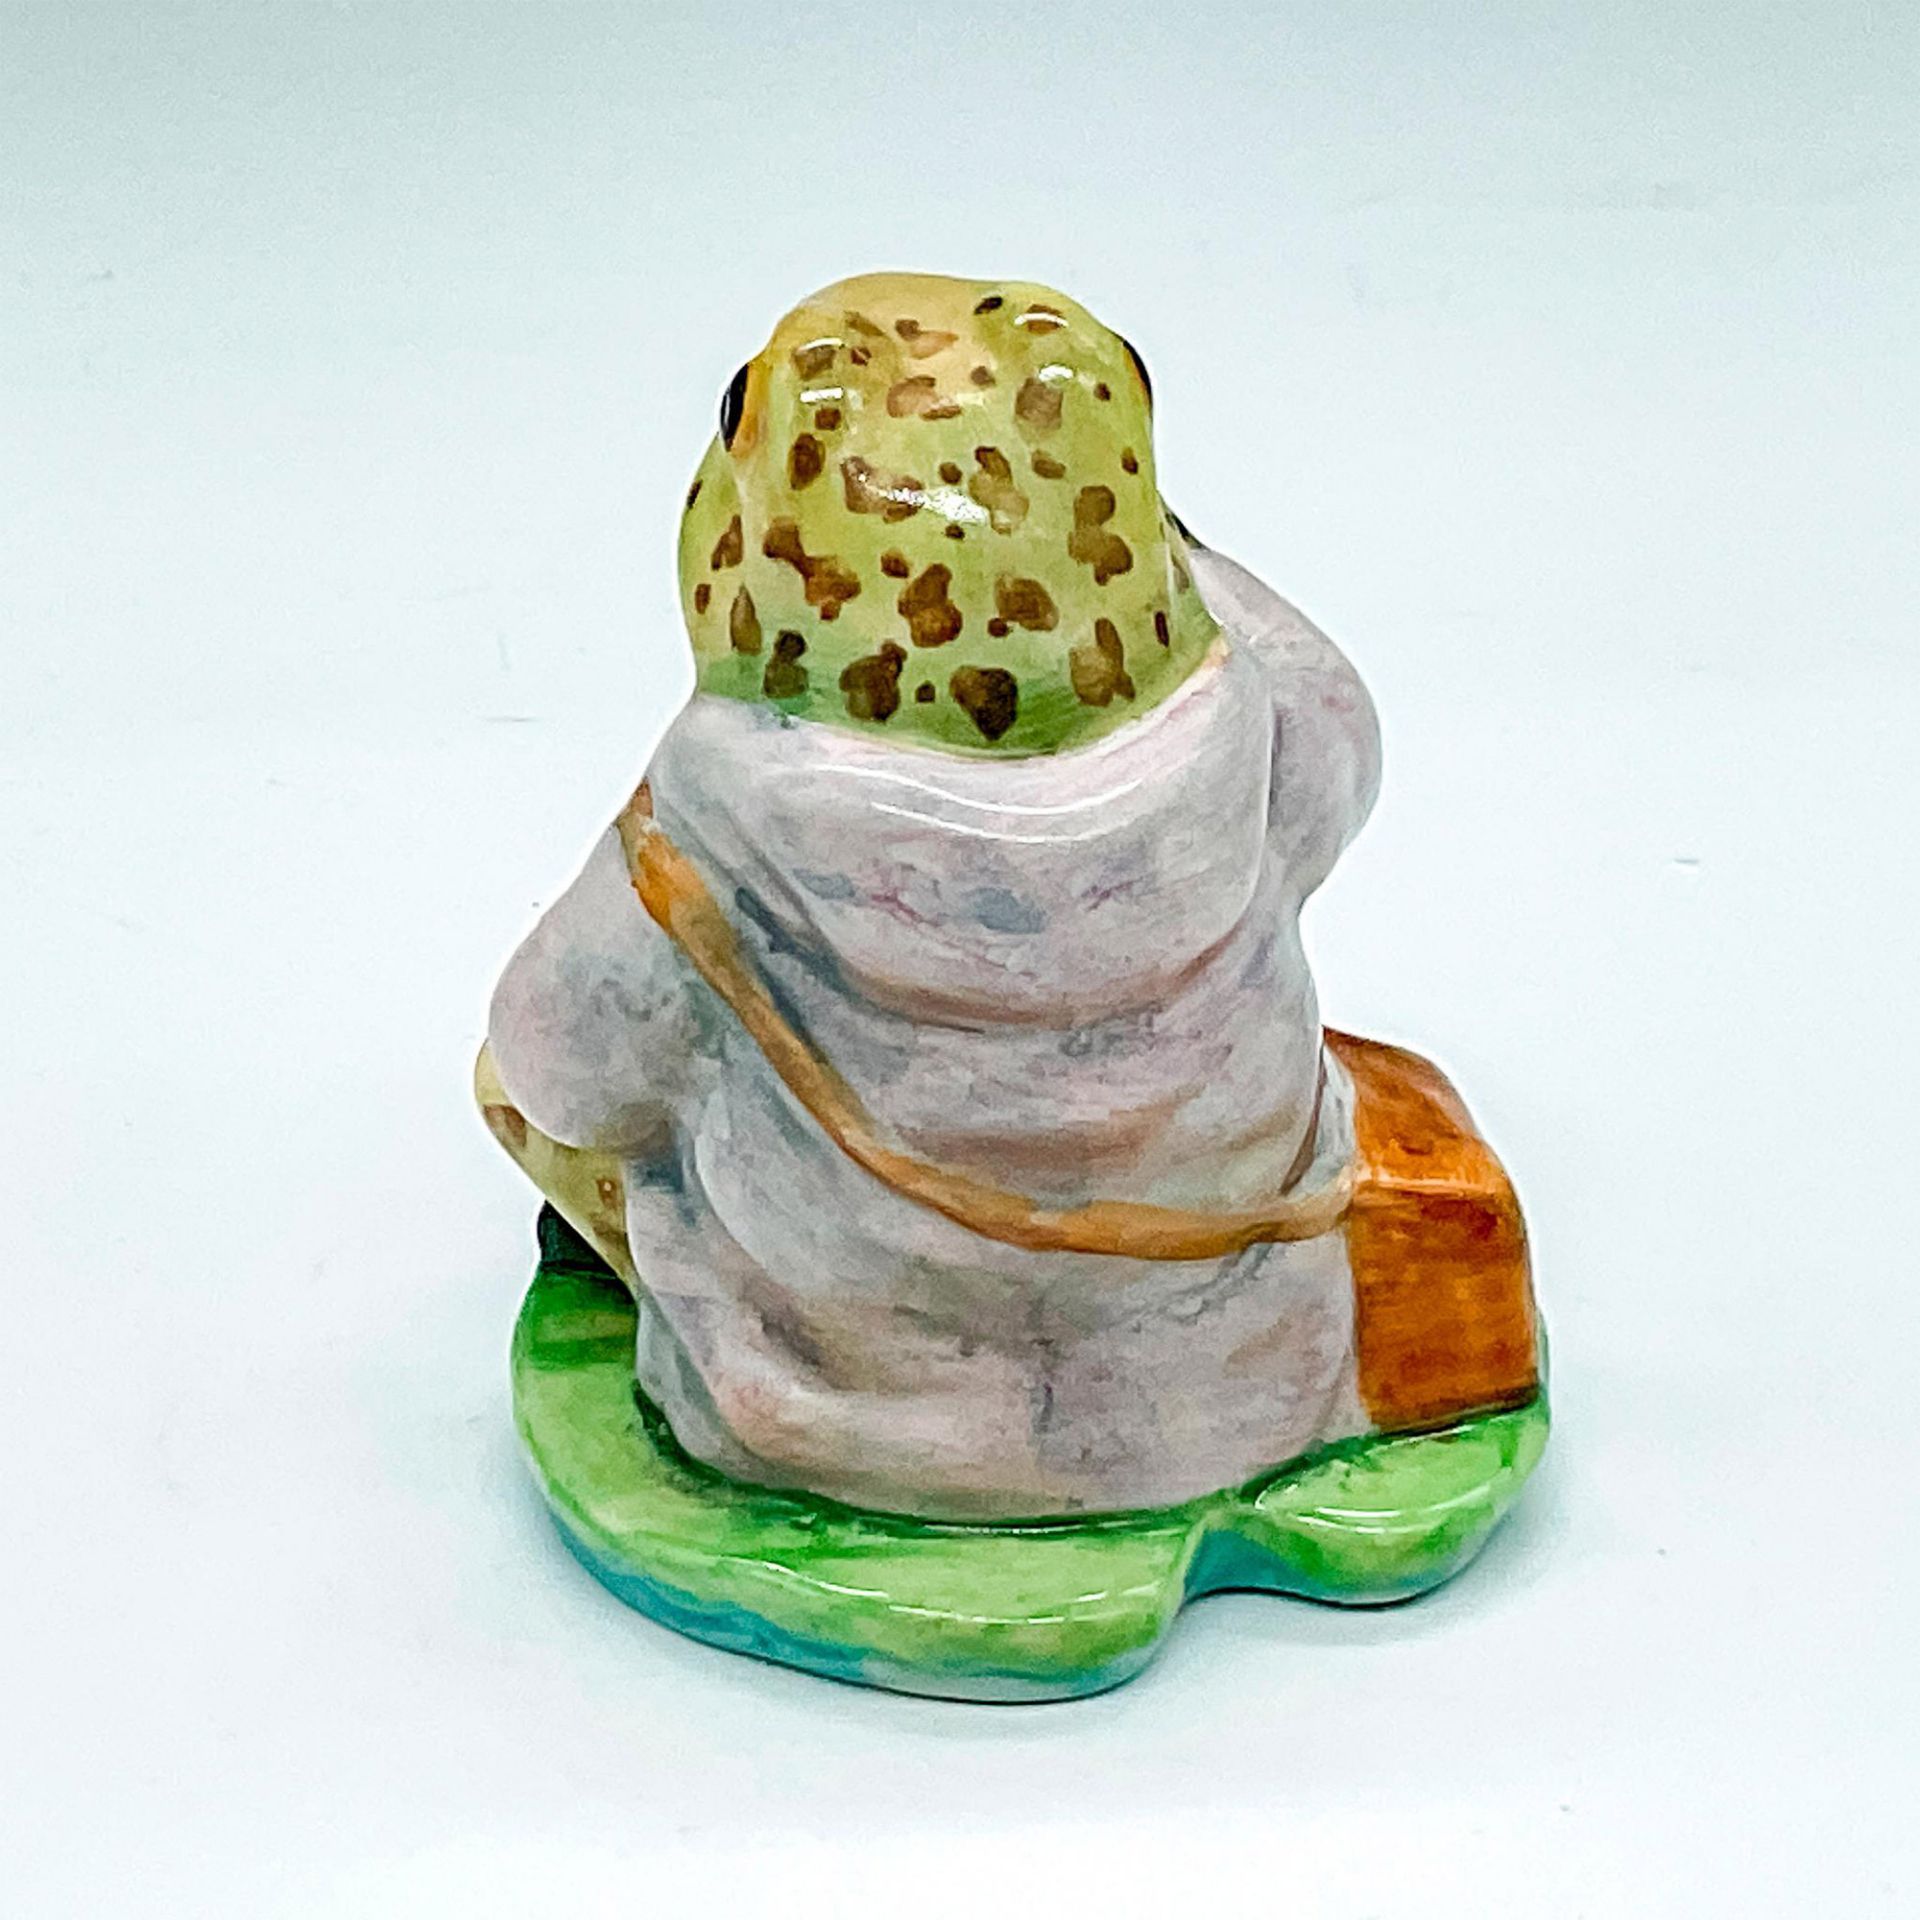 Beswick Beatrix Potter's Figurine, Mr. Jeremy Fisher - Image 2 of 3